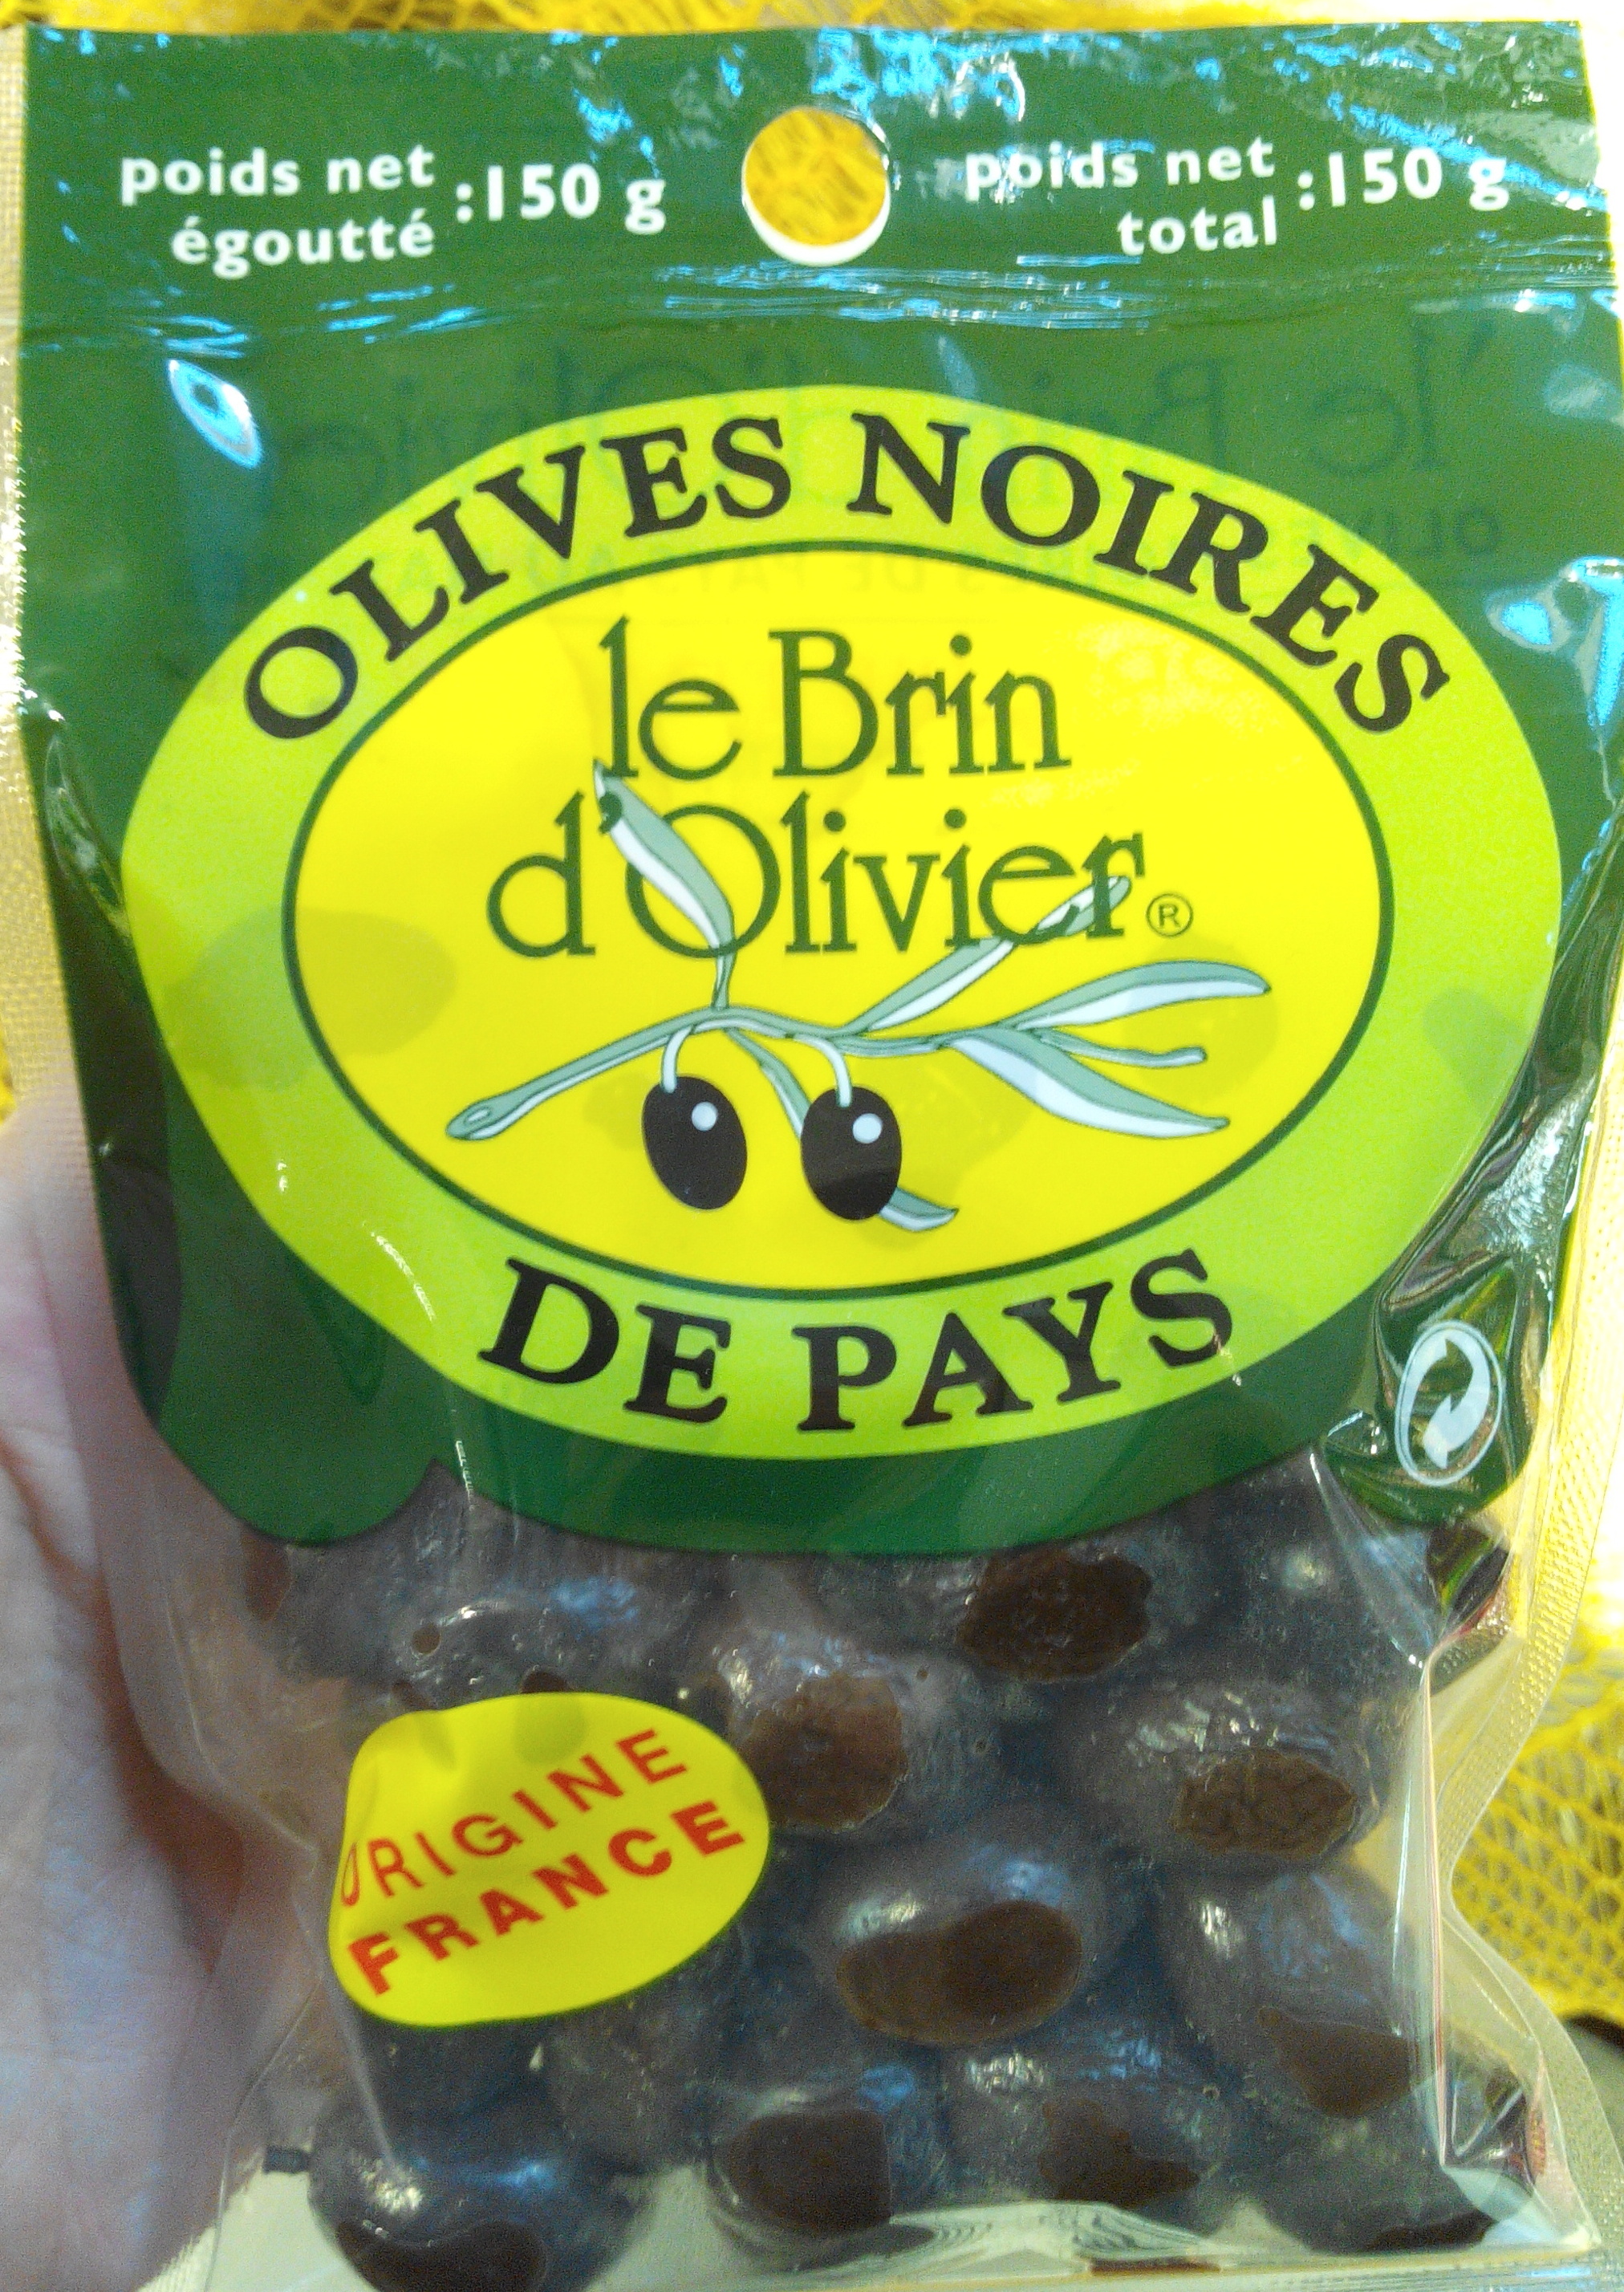 Olives noires de pays - Product - fr